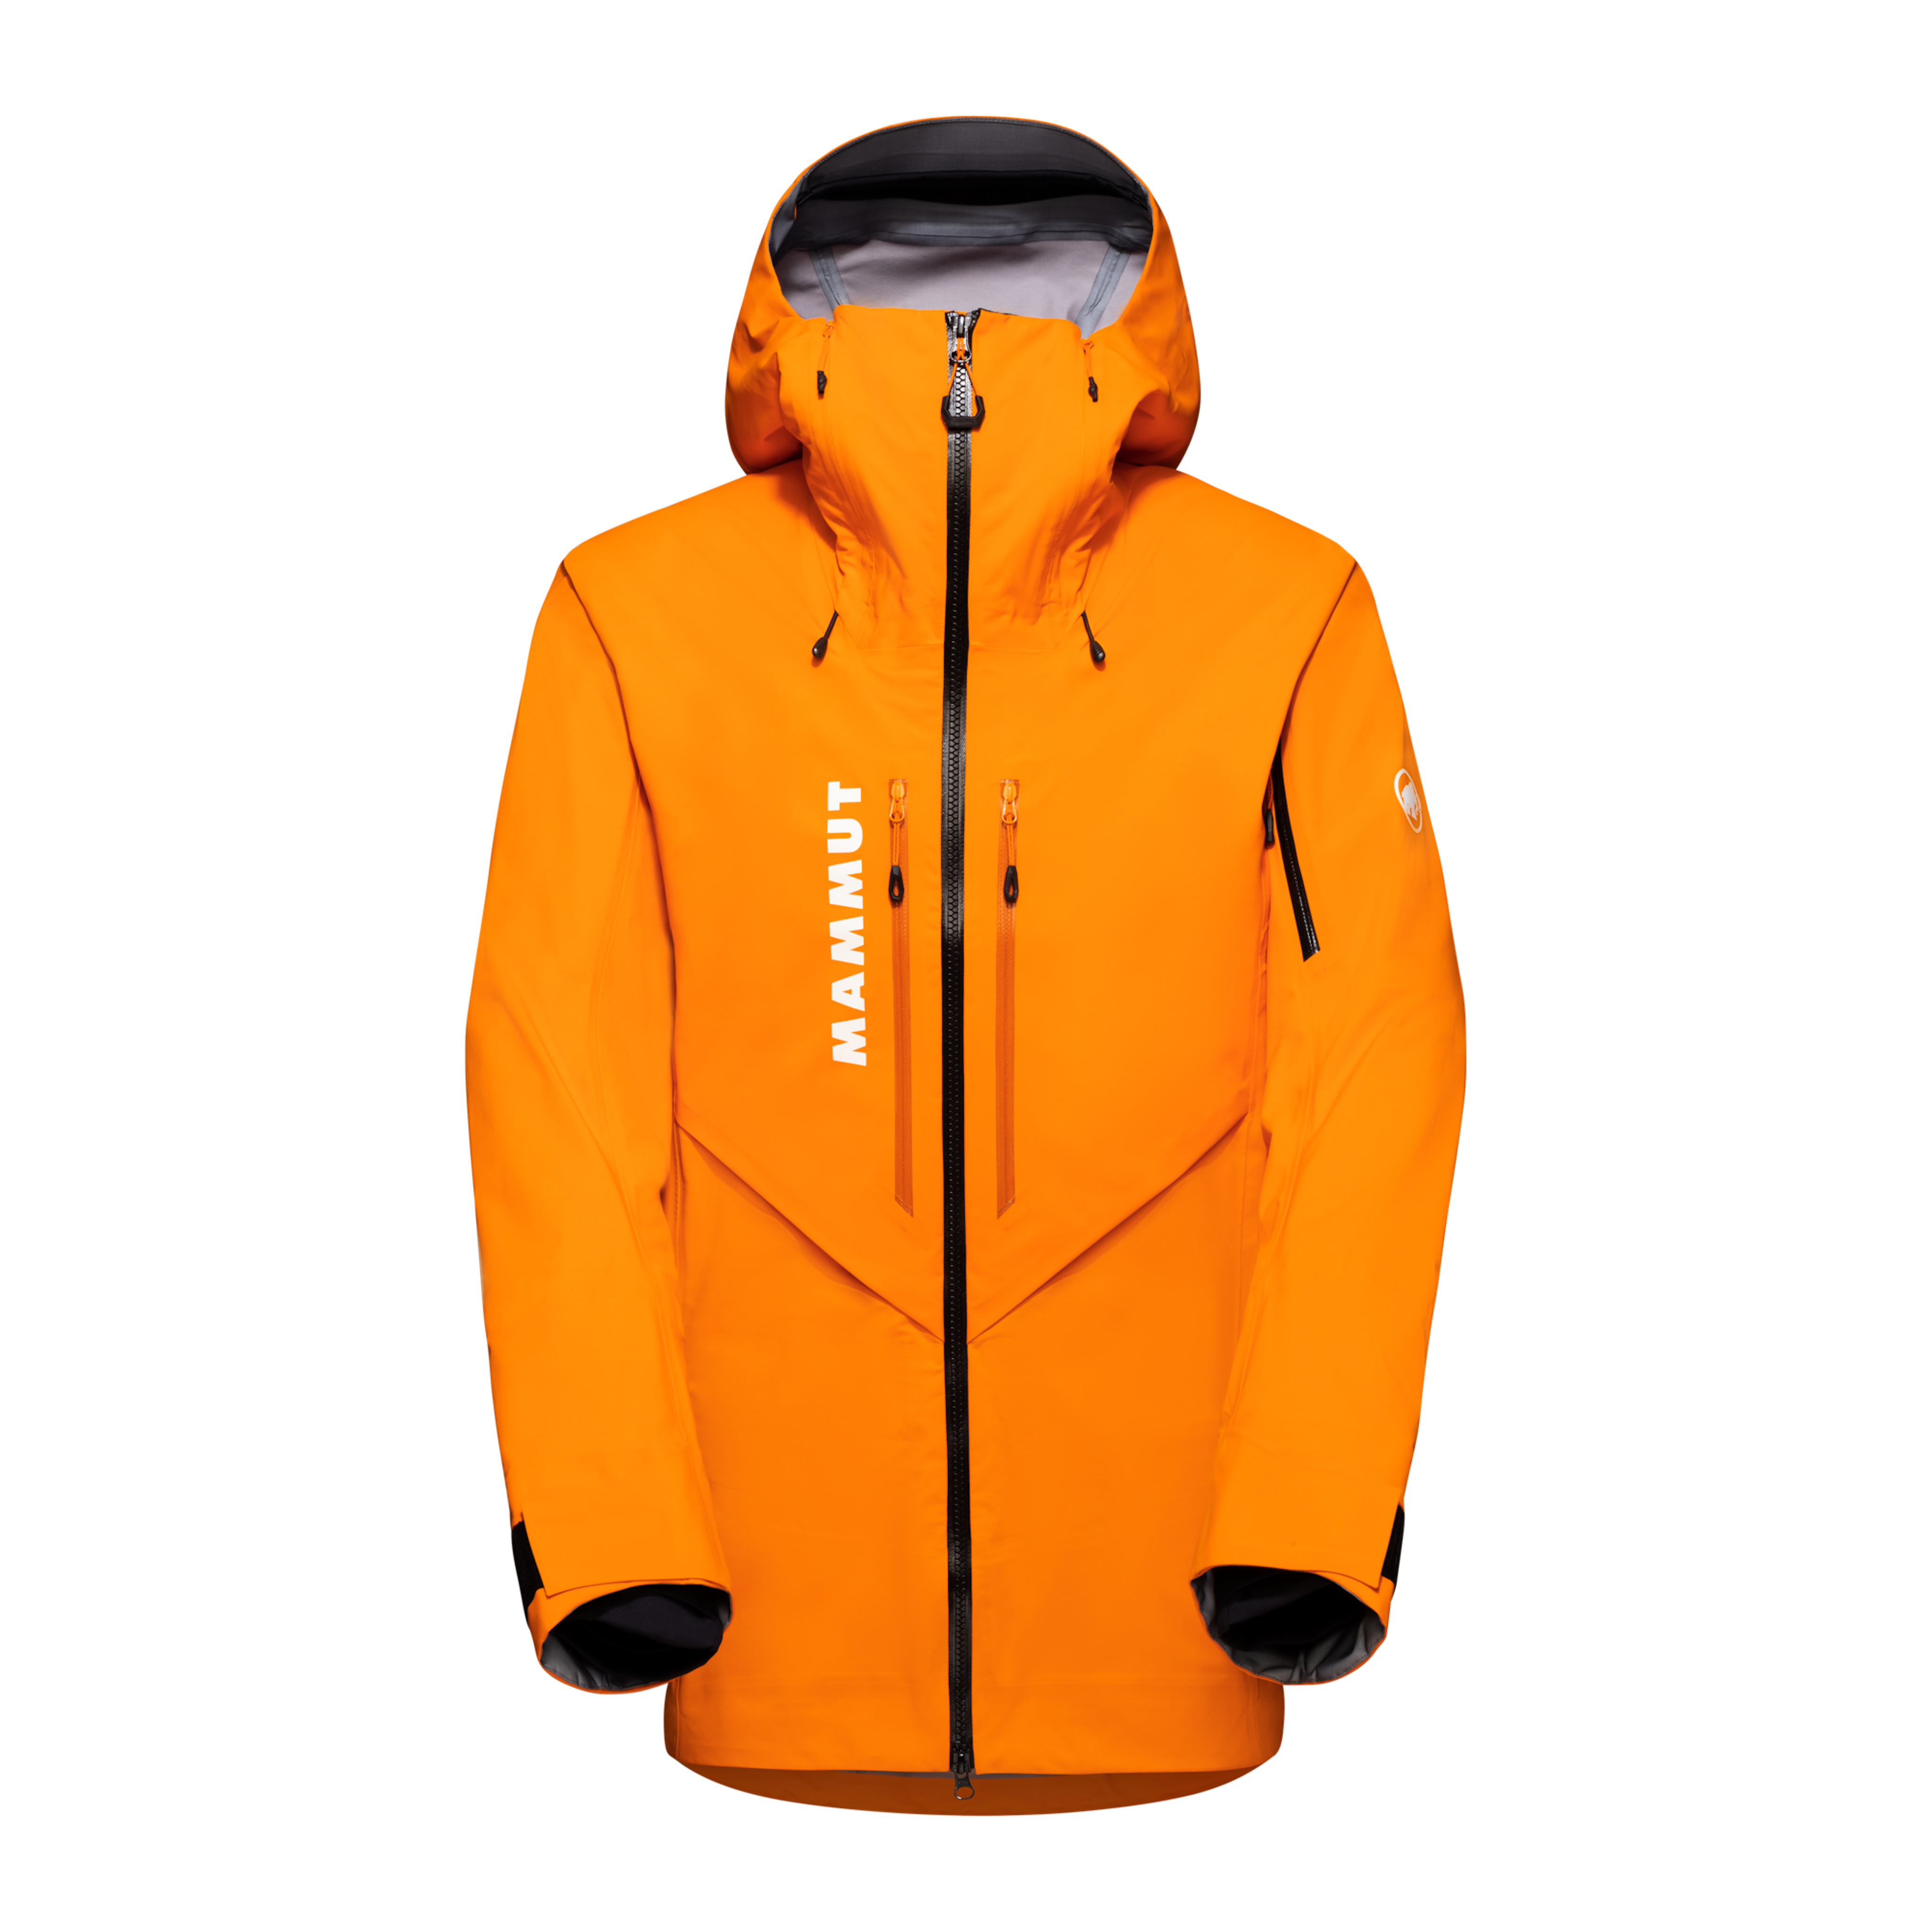 Mammut jacket in orange